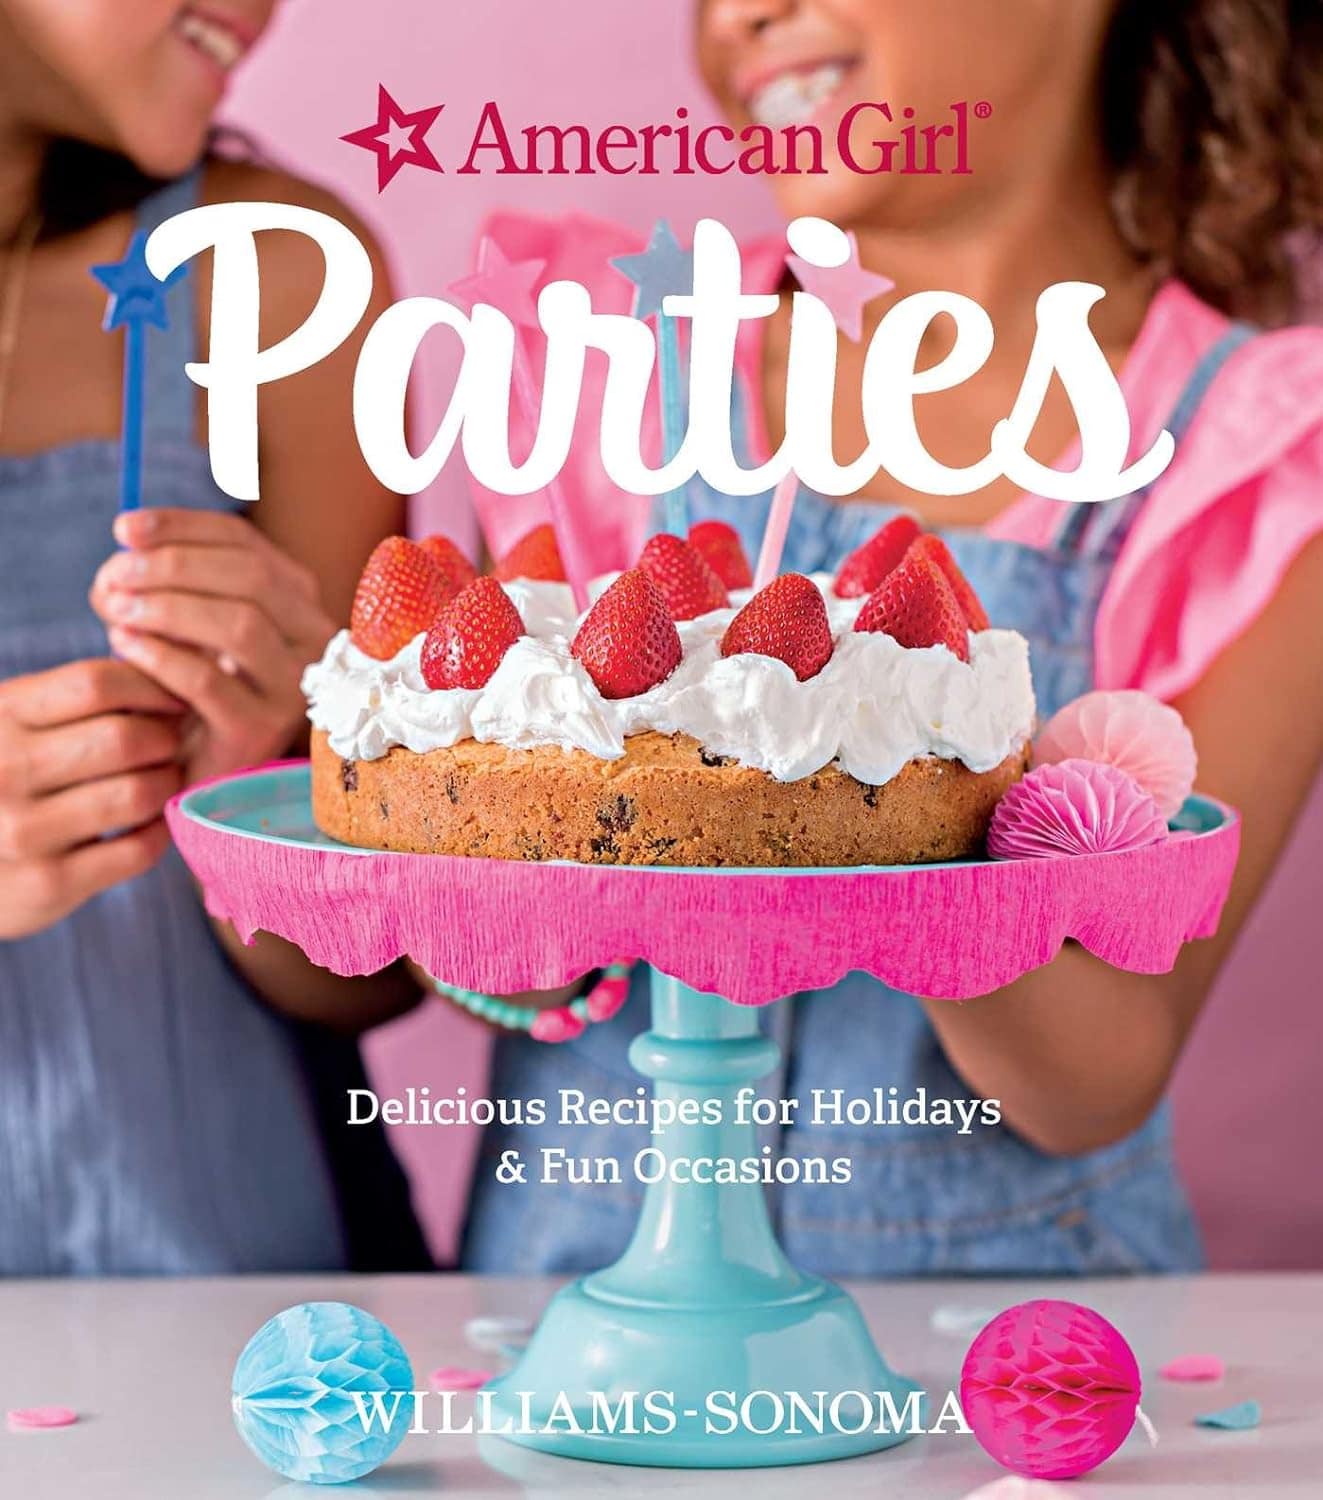 "American Girl Parties" cookbook